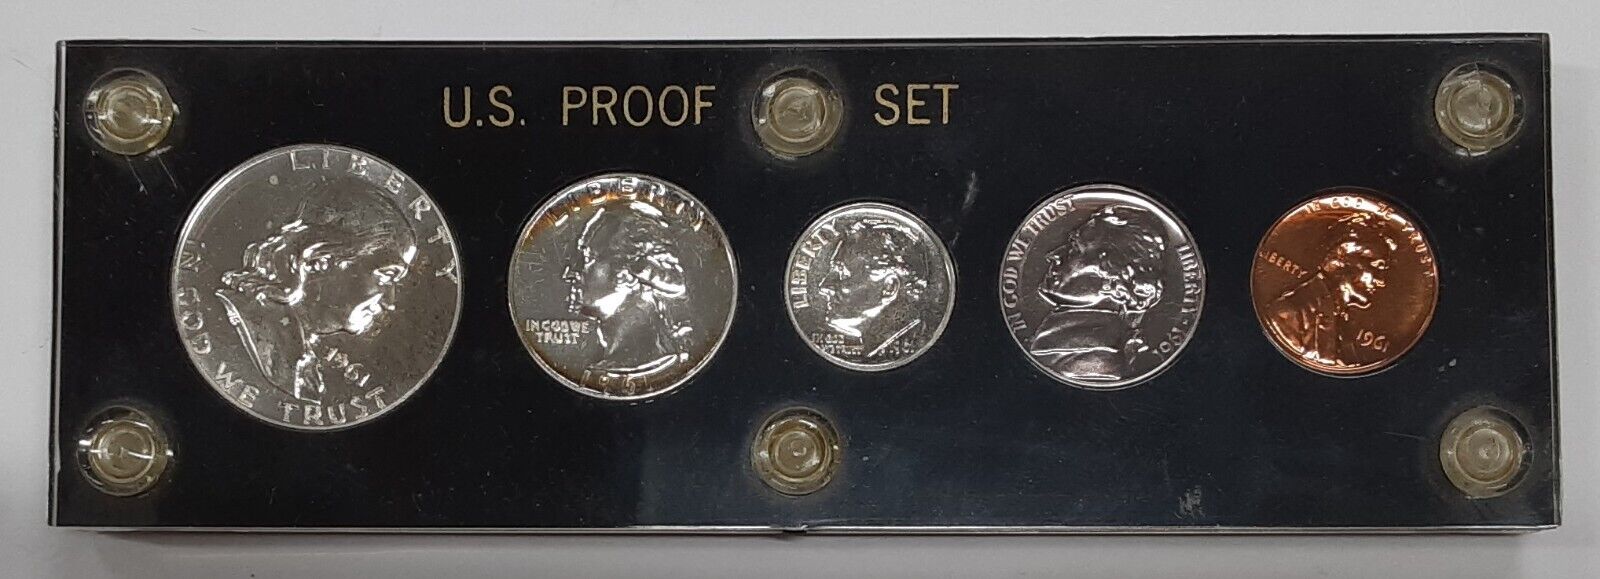 1961 Proof Set 5 Coins w/90% Silver Half, Quarter, & Dime in Black Holder